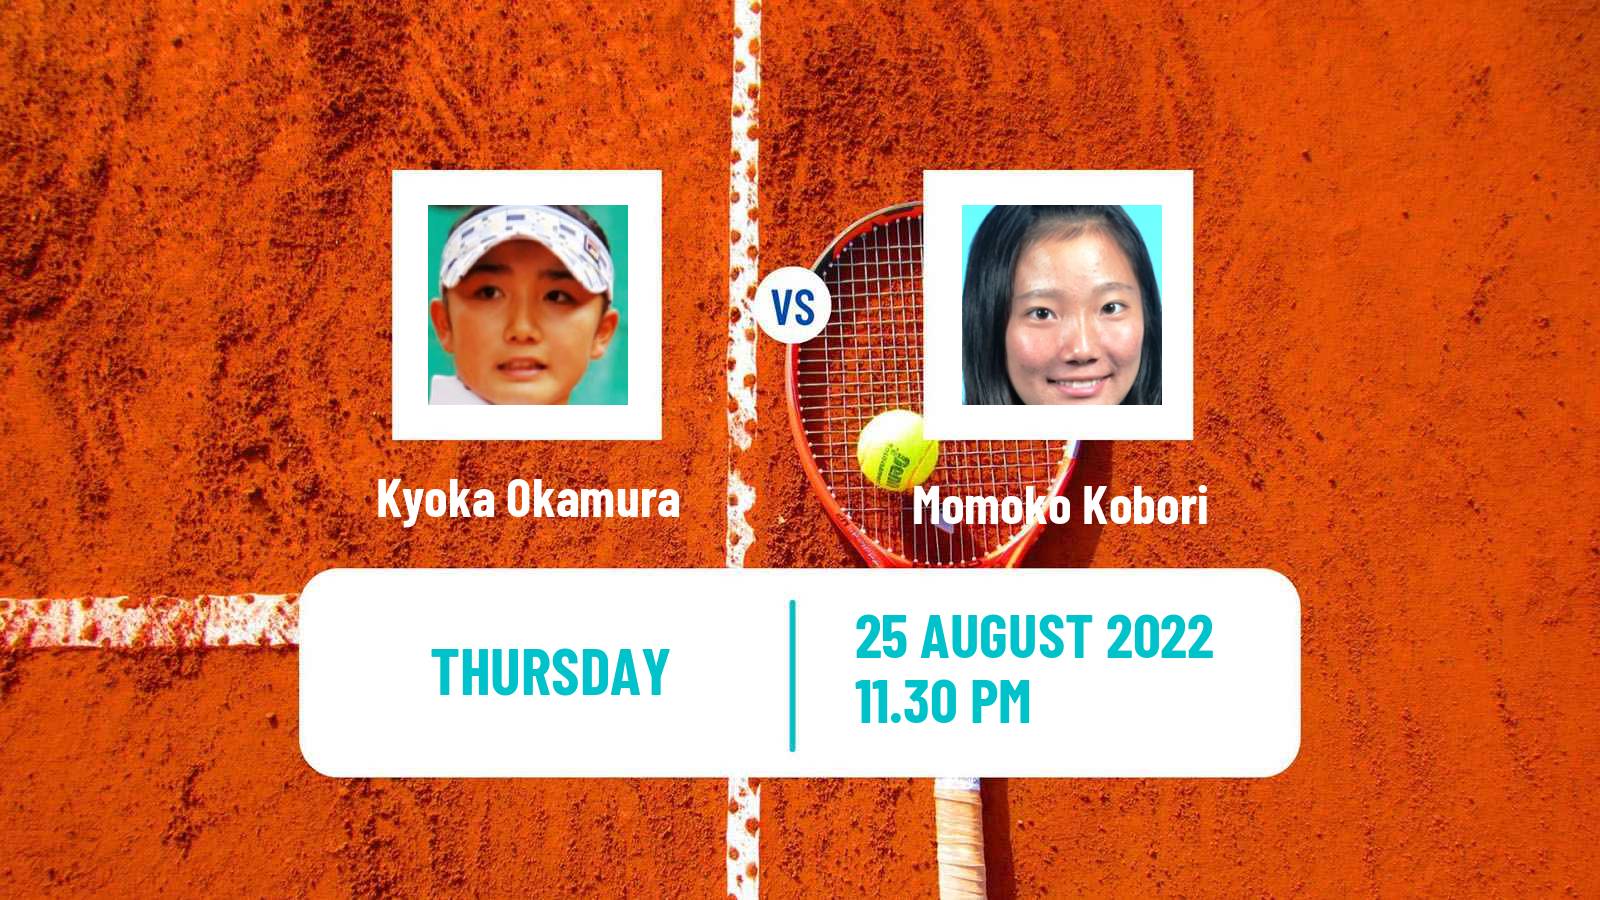 Tennis ITF Tournaments Kyoka Okamura - Momoko Kobori